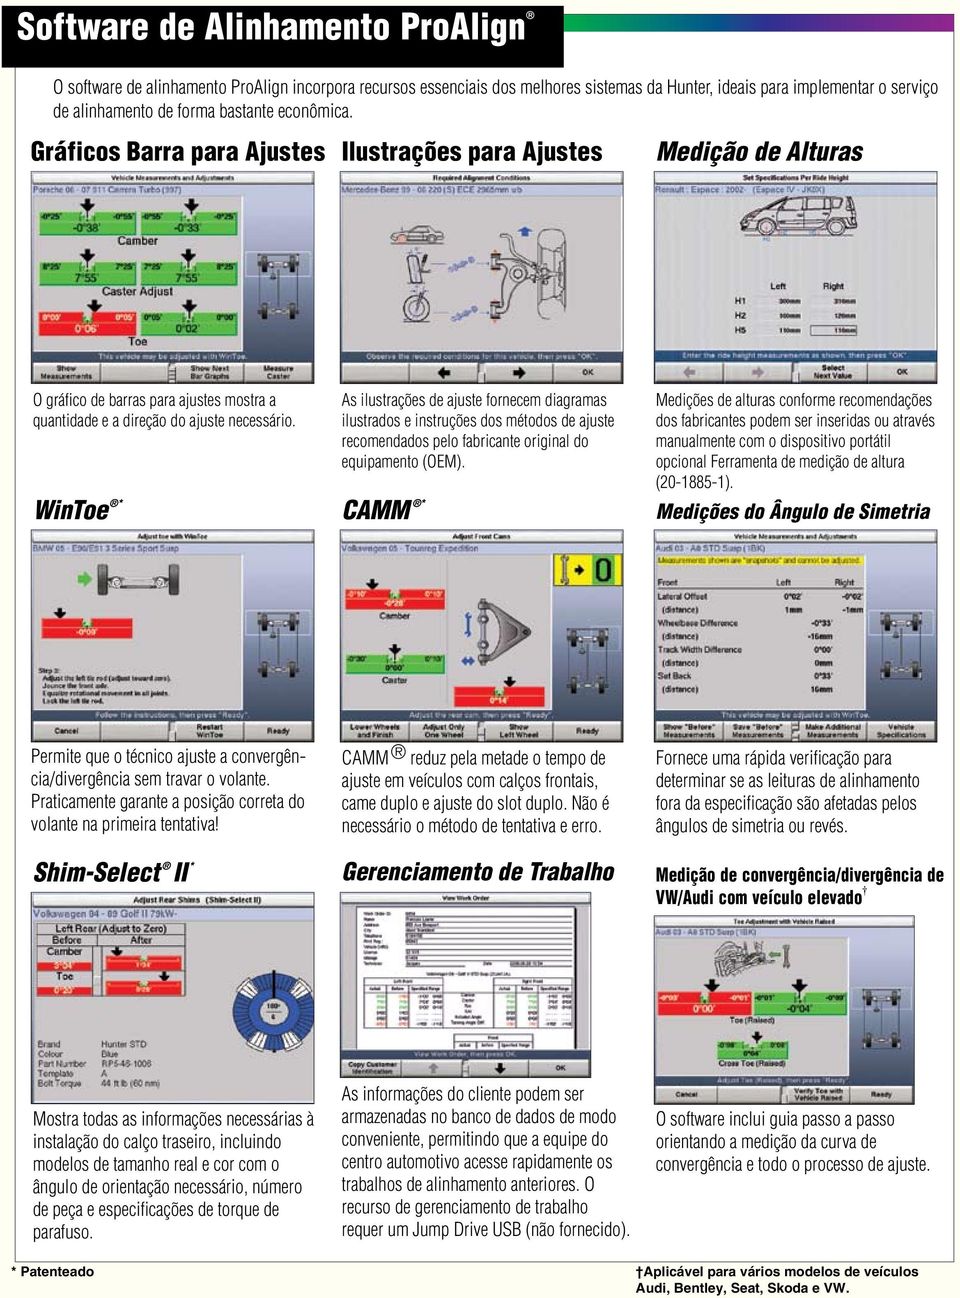 WinToe * As ilustrações de ajuste fornecem diagramas ilustrados e instruções dos métodos de ajuste recomendados pelo fabricante original do equipamento (OEM).